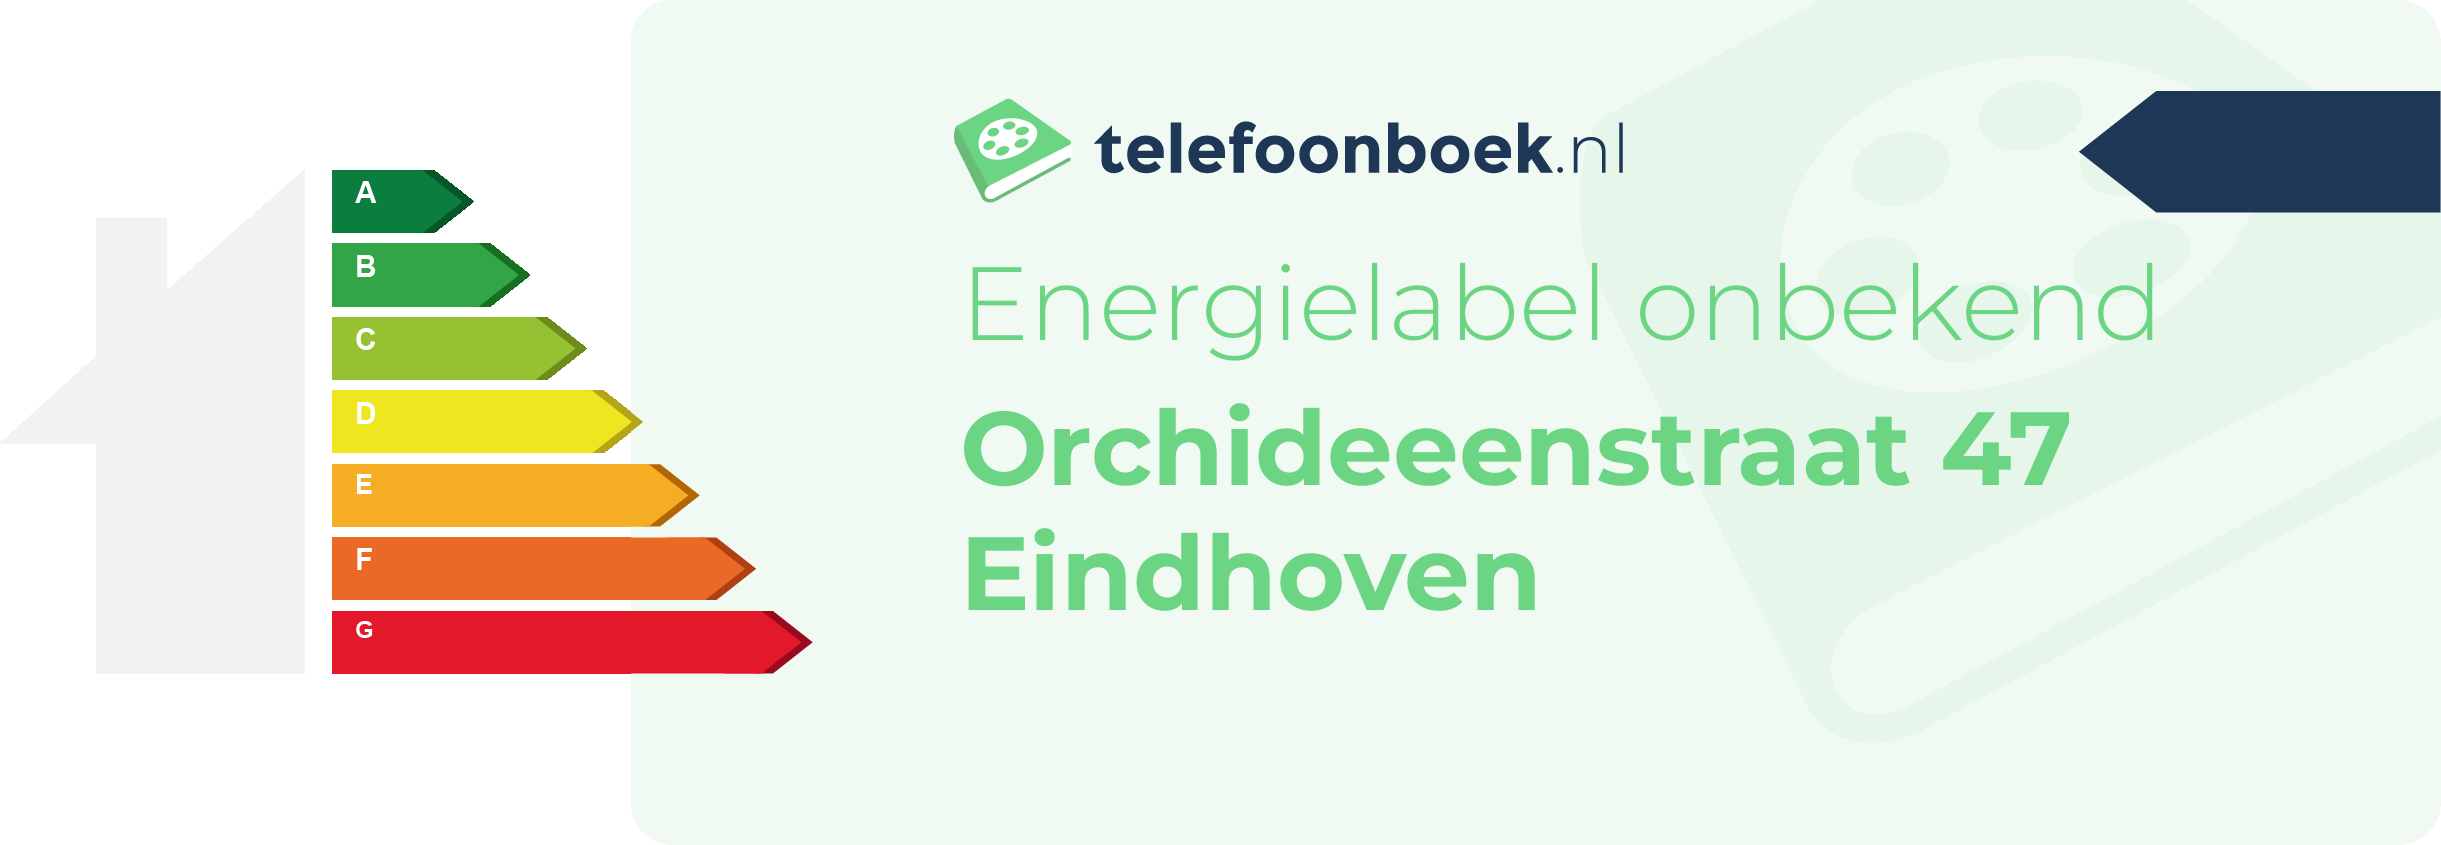 Energielabel Orchideeenstraat 47 Eindhoven